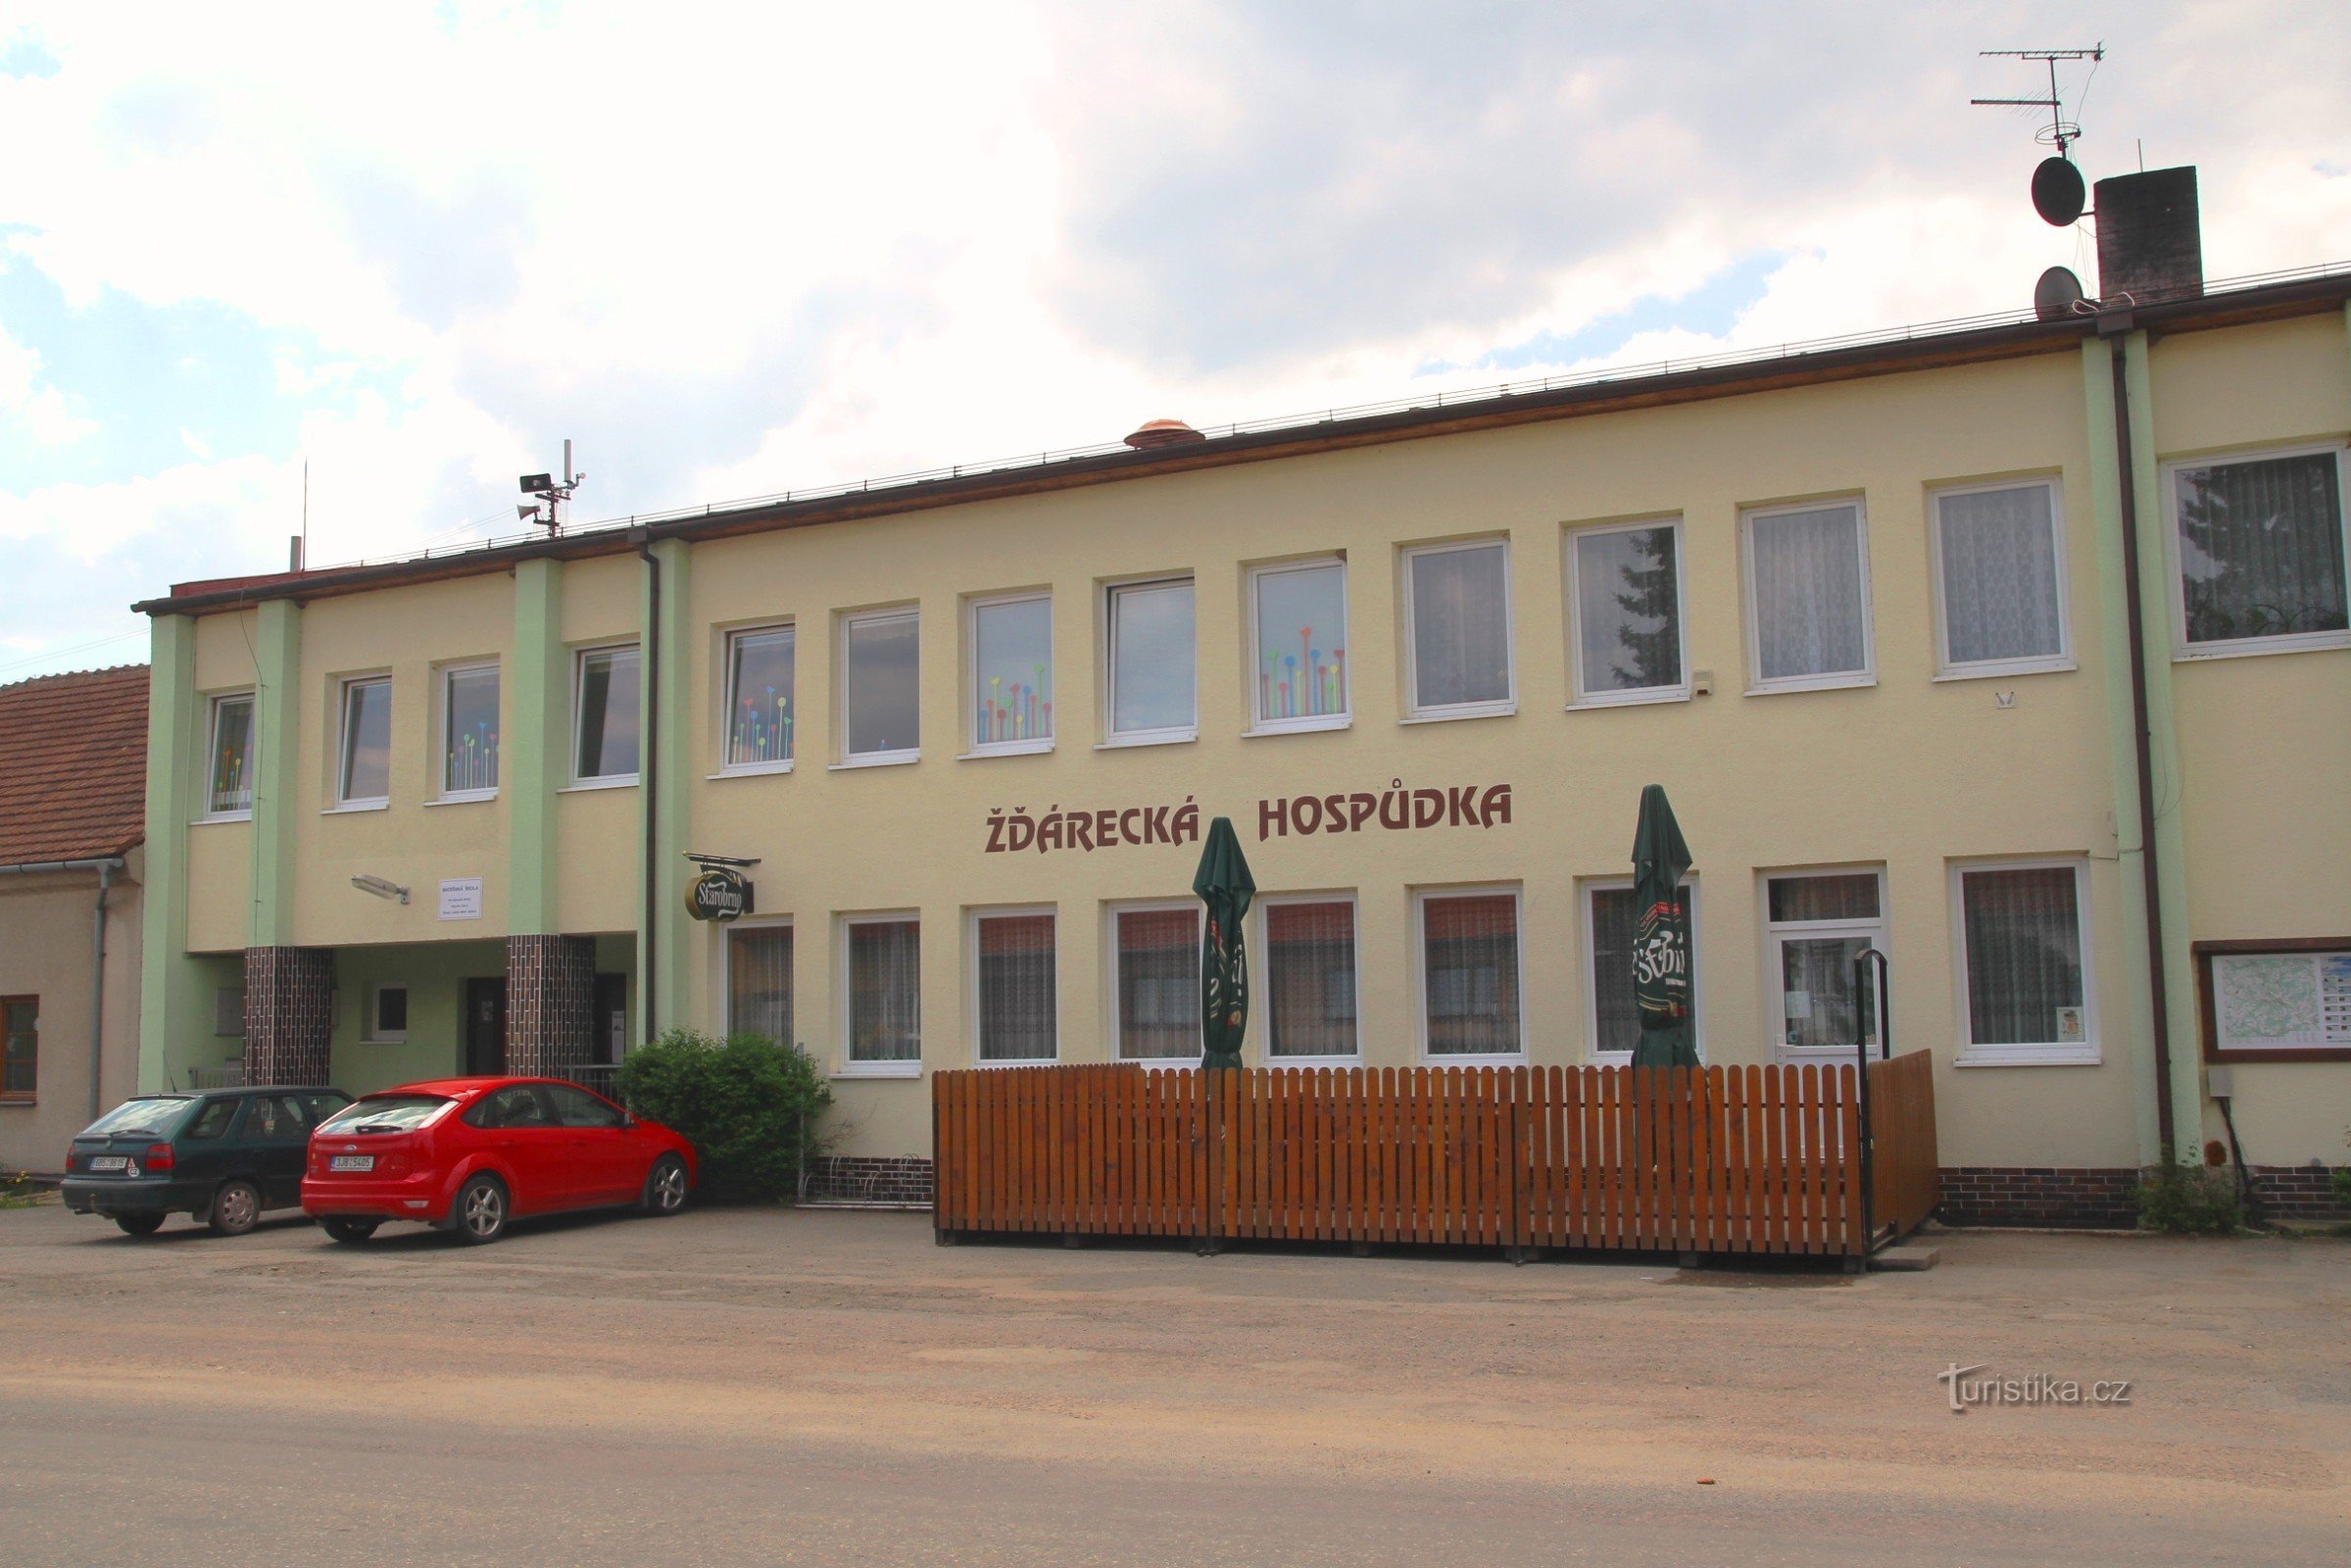 Pub Žďárecká znajduje się w pobliżu przystanku autobusowego